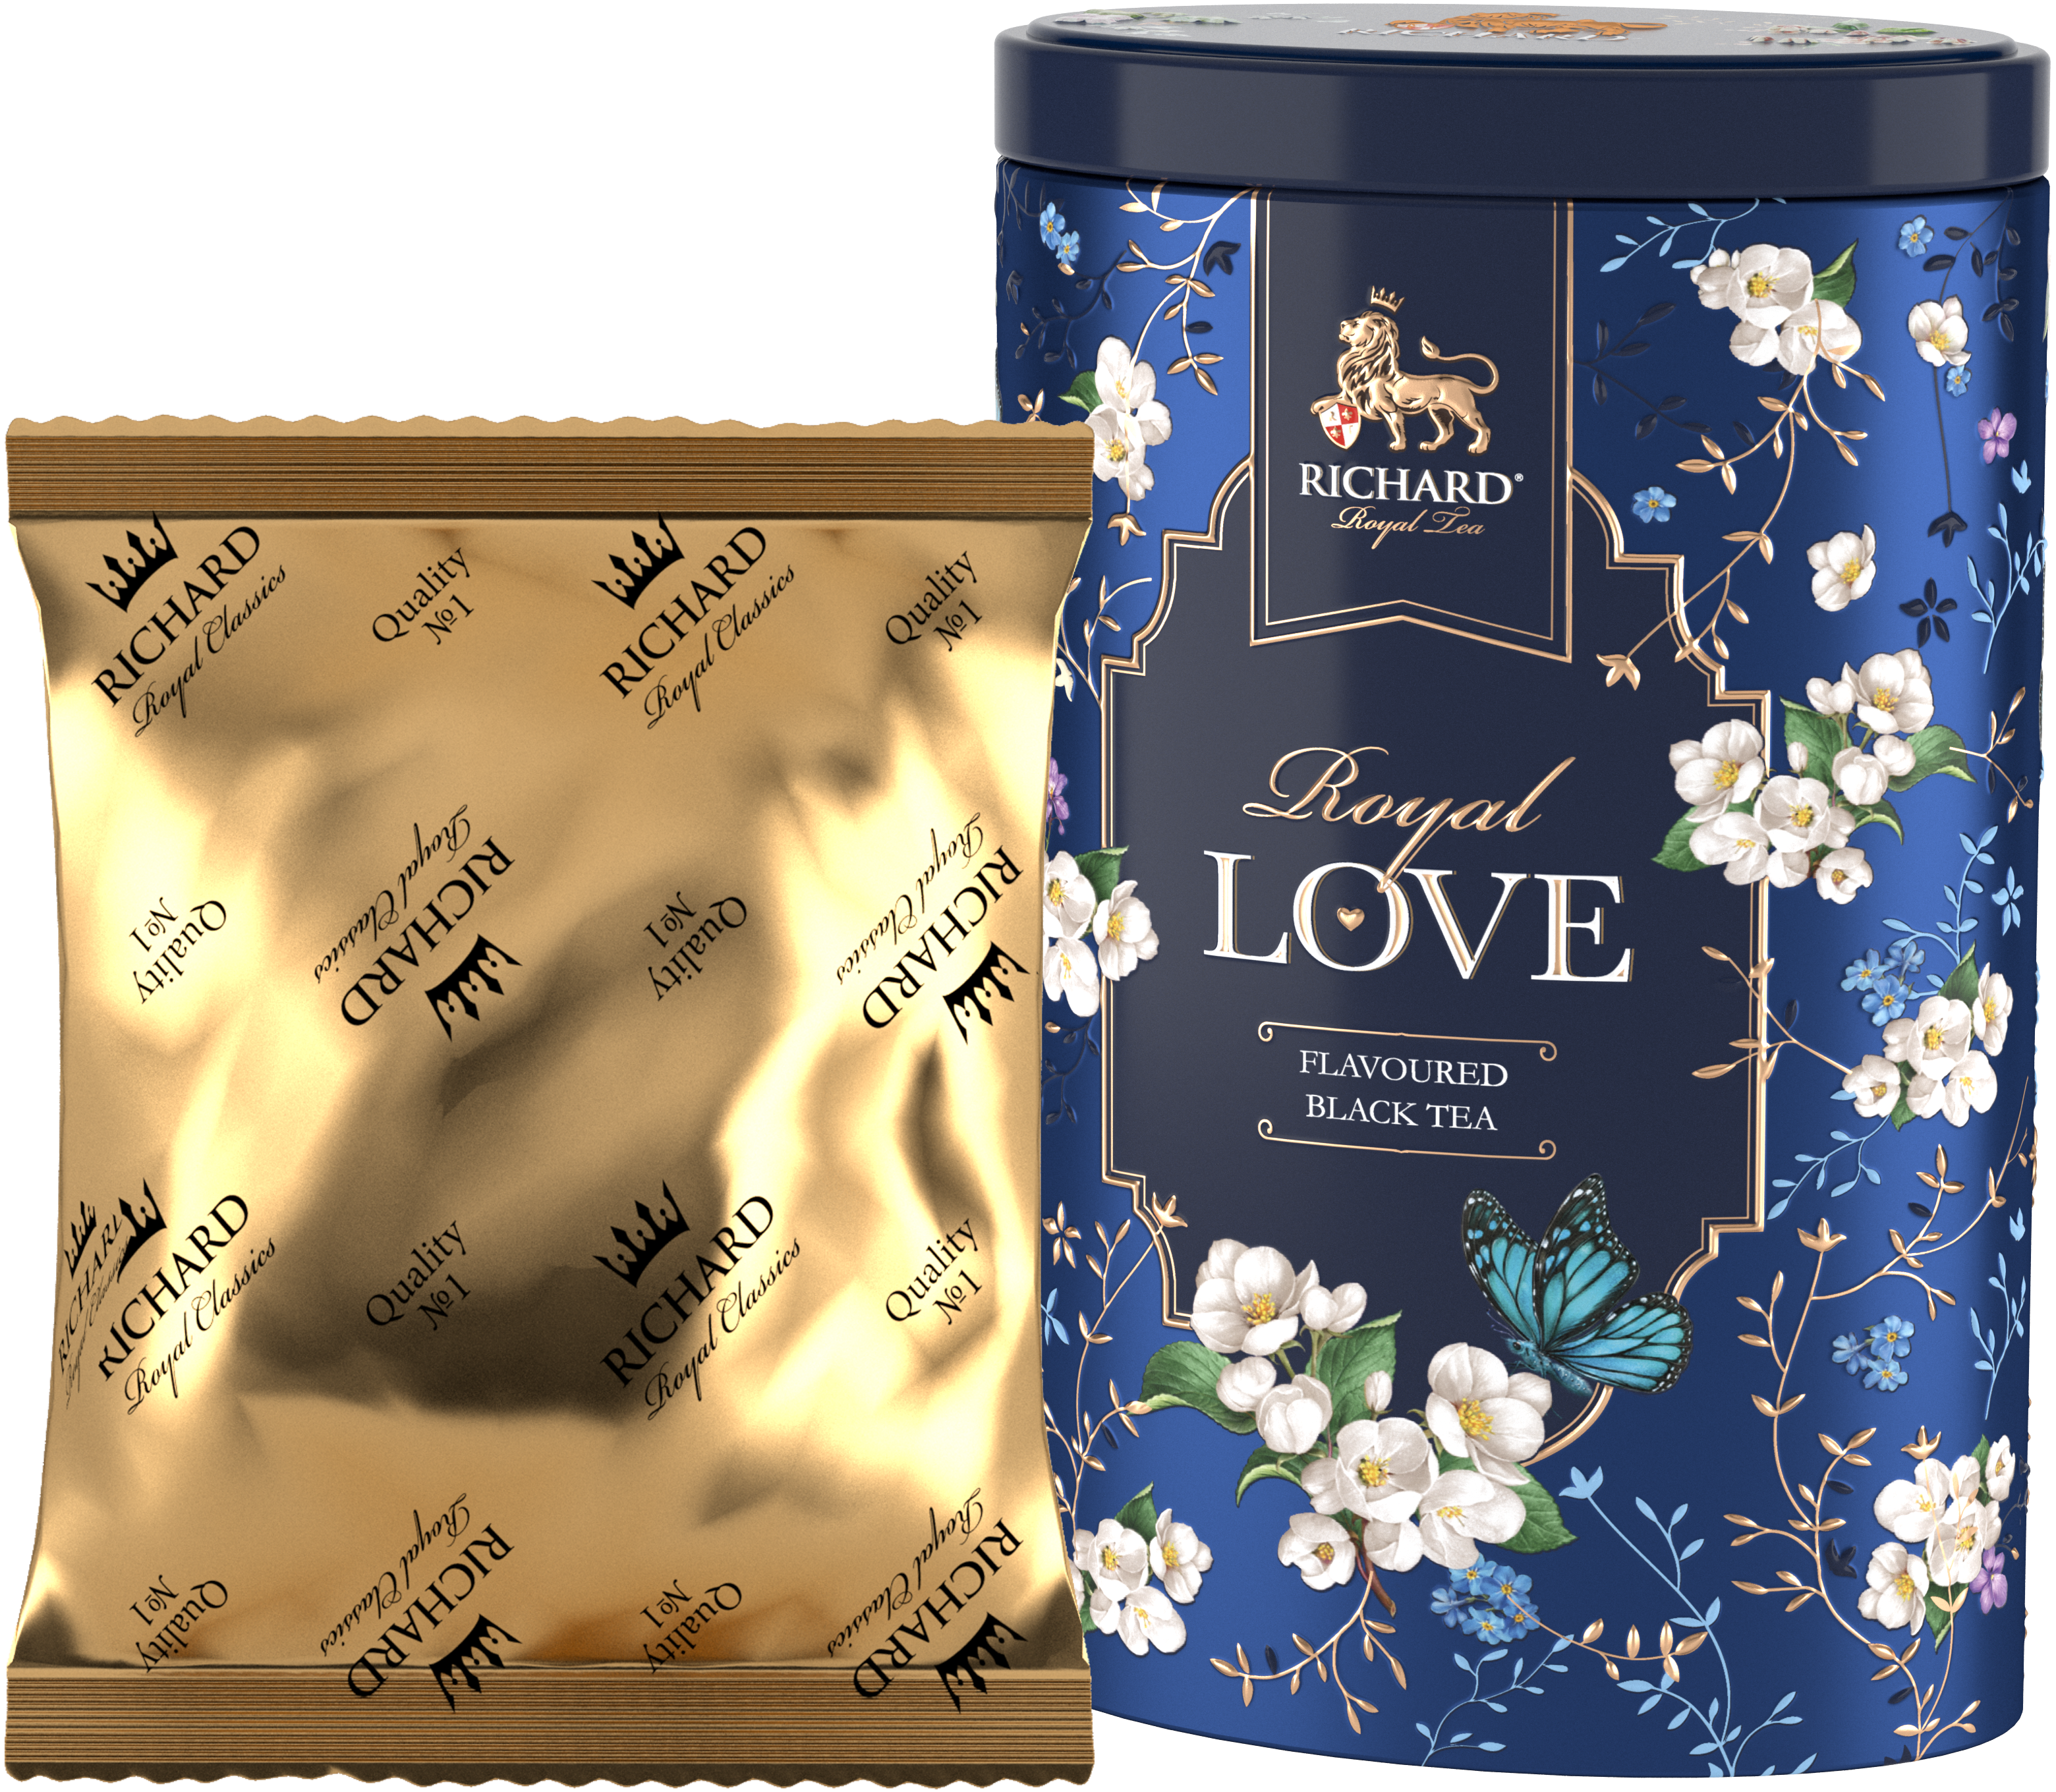 Royal Szerelem ízesített fekete tea, szálas, 80g, BLUE fémdobozban - RichardTeavn - vásároljon a 2990.00 Ft